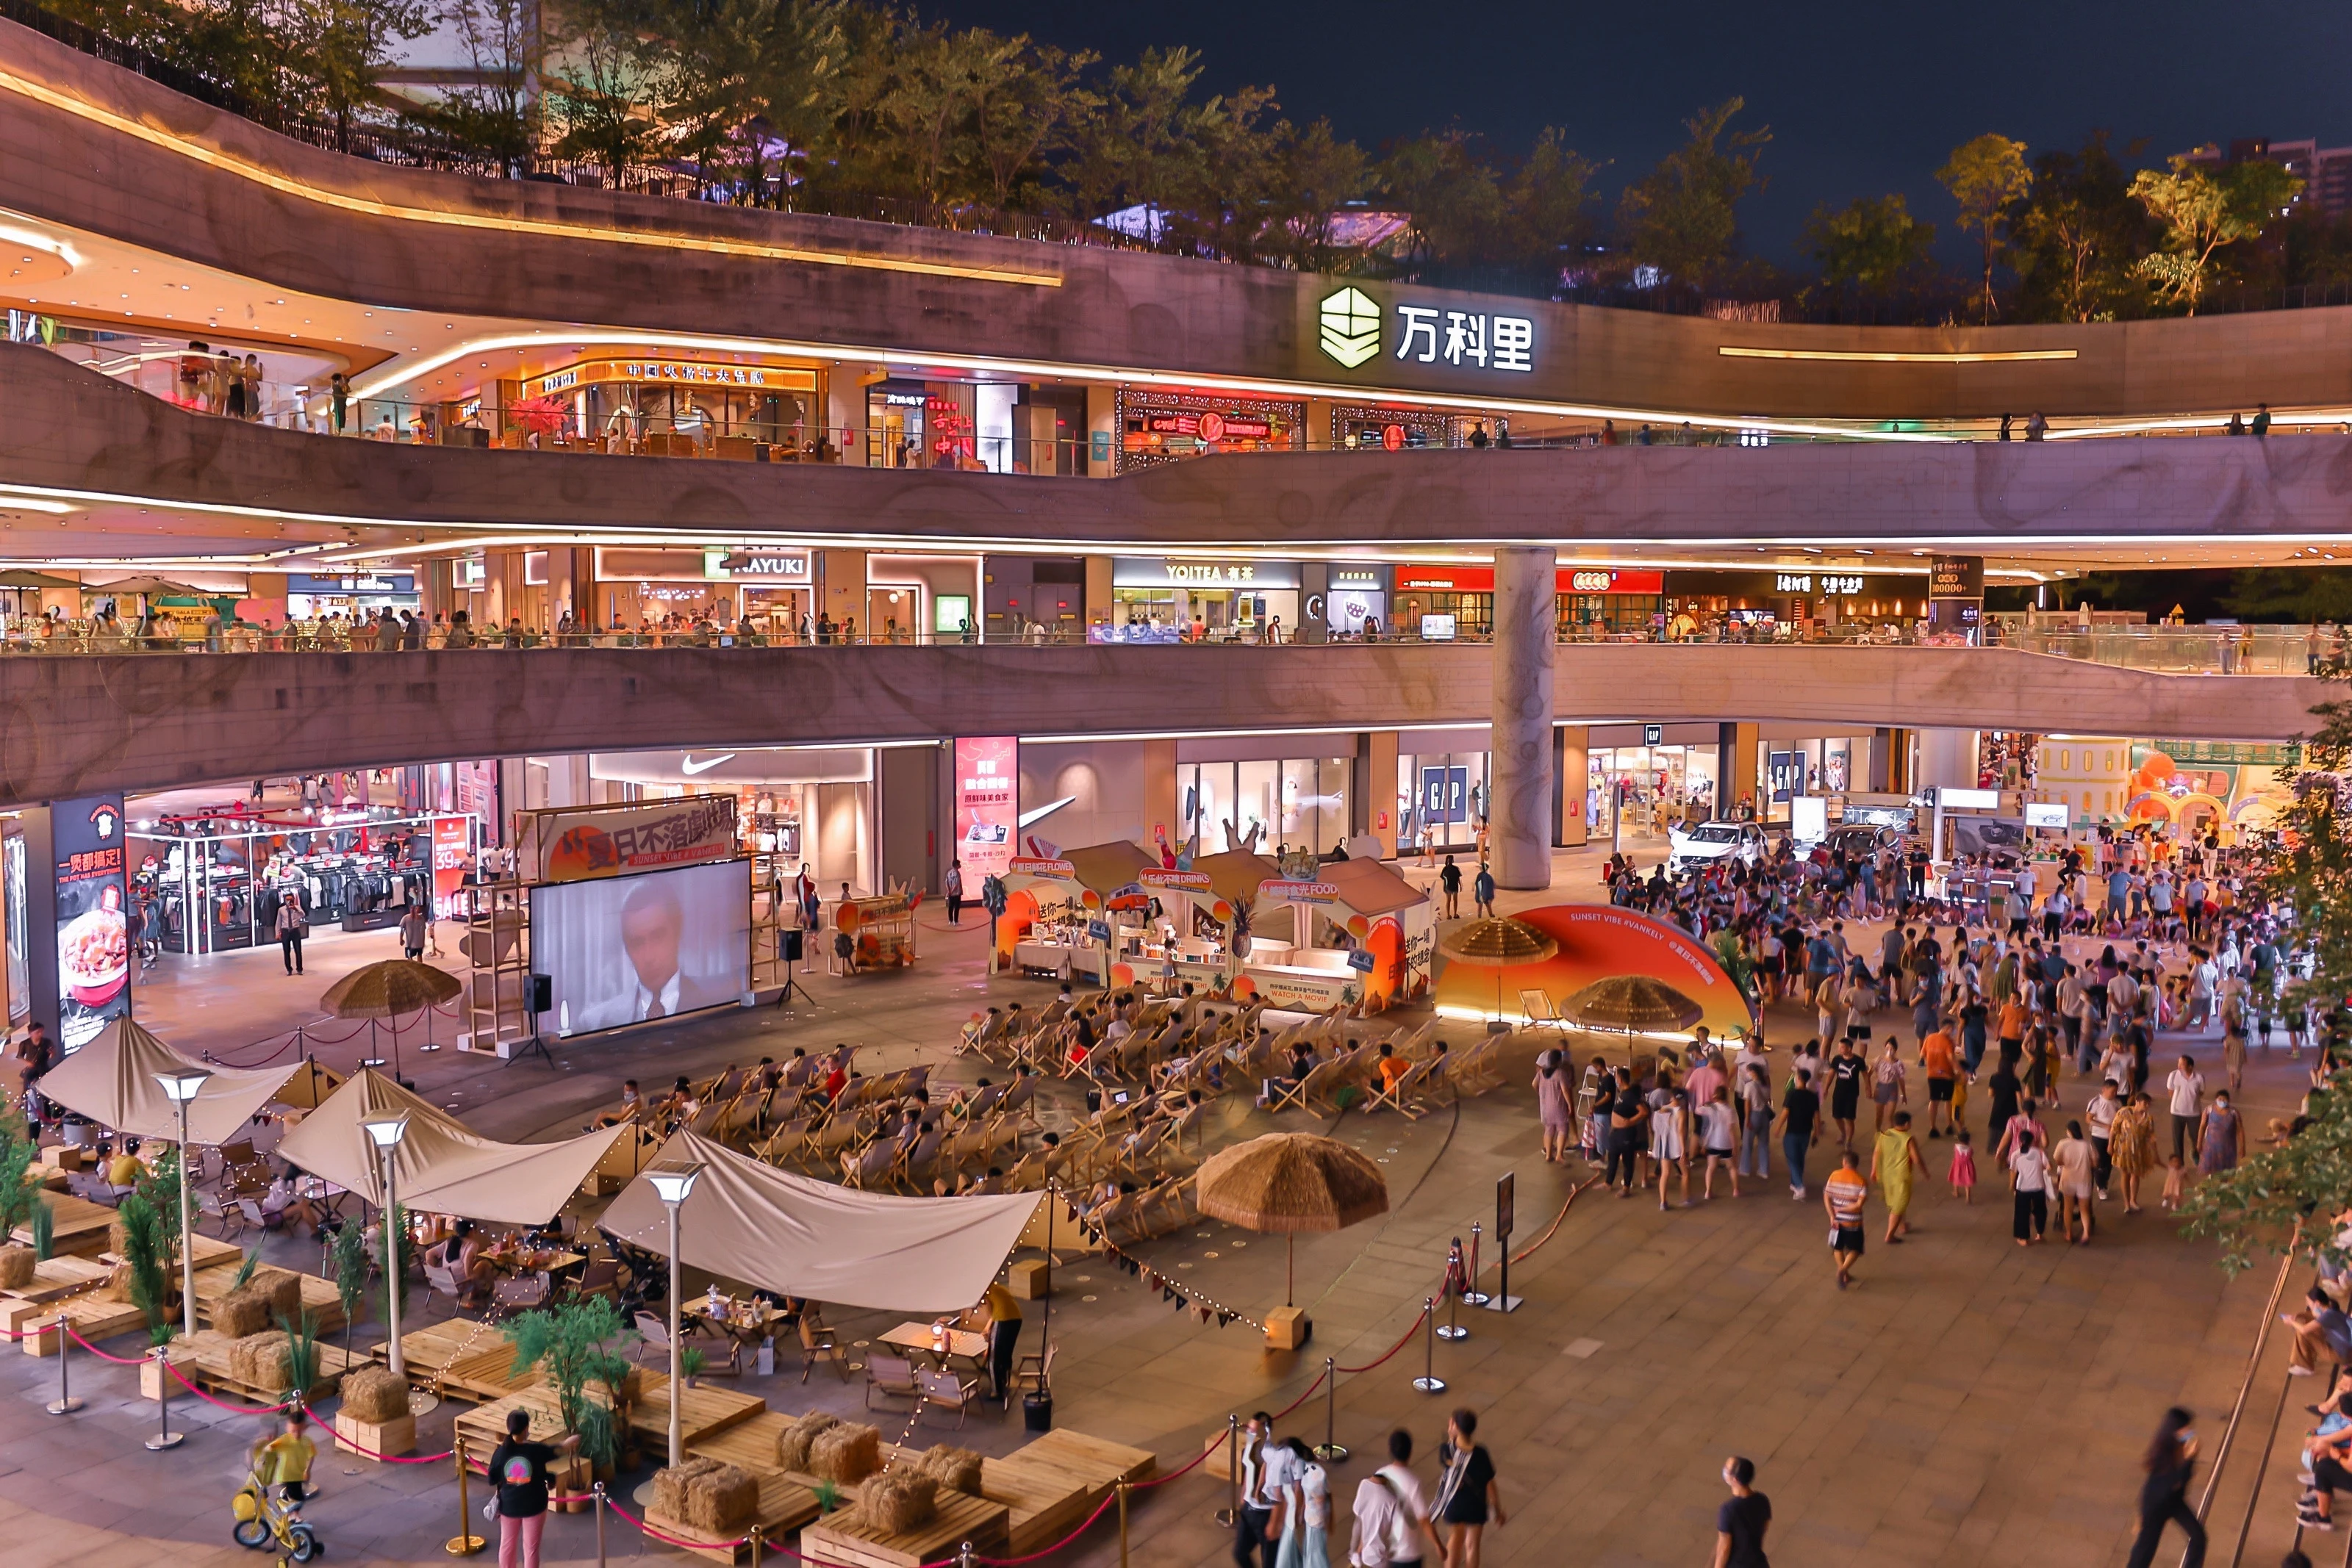 其中,龙岗万科广场立足打造深圳东部国际轻奢购物中心;龙城万科里则